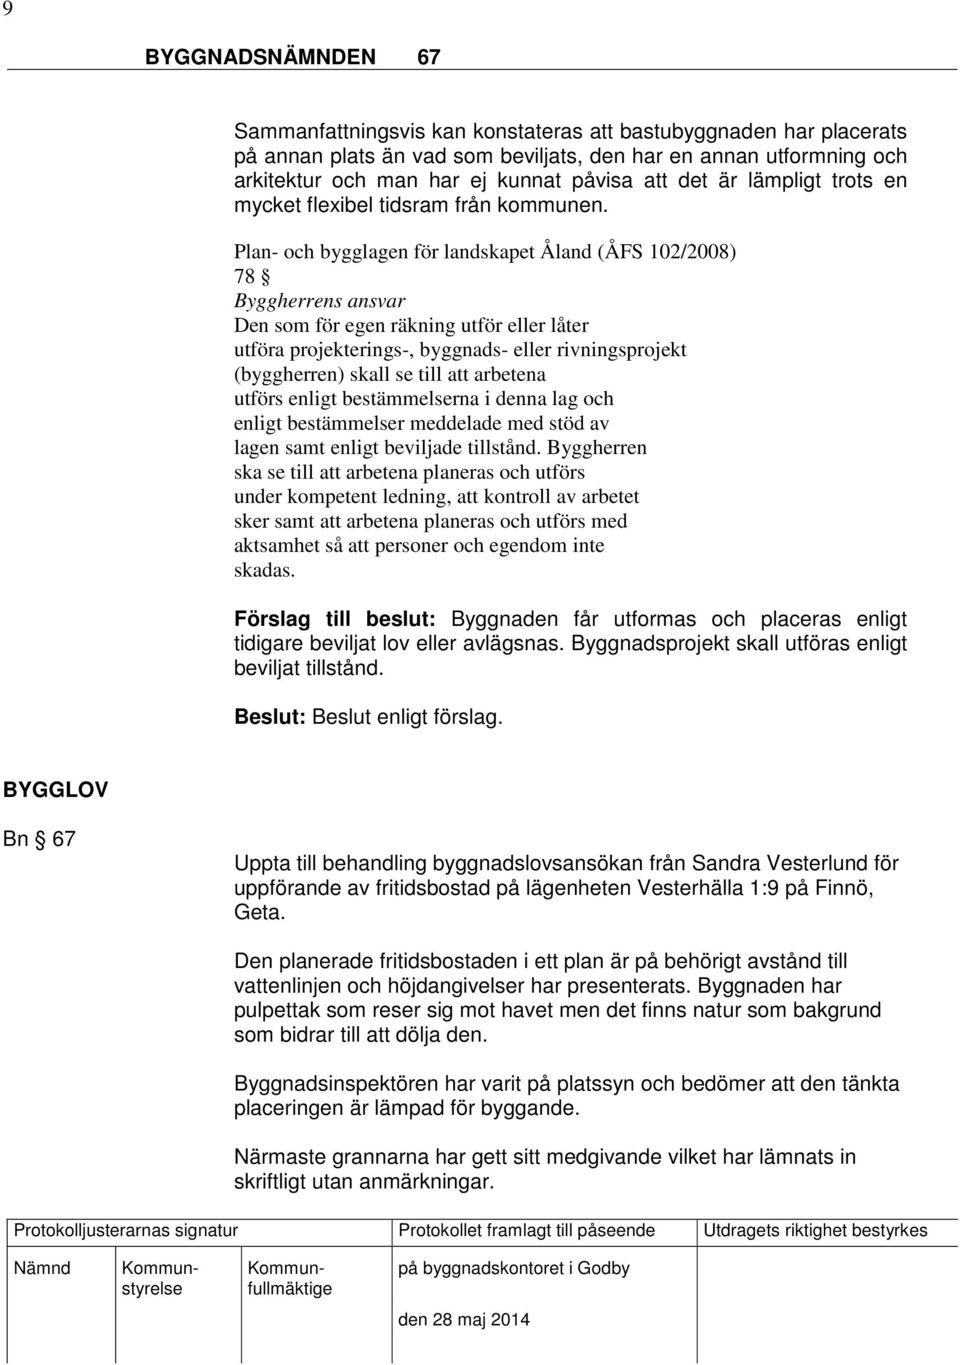 Plan- och bygglagen för landskapet Åland (ÅFS 102/2008) 78 Byggherrens ansvar Den som för egen räkning utför eller låter utföra projekterings-, byggnads- eller rivningsprojekt (byggherren) skall se